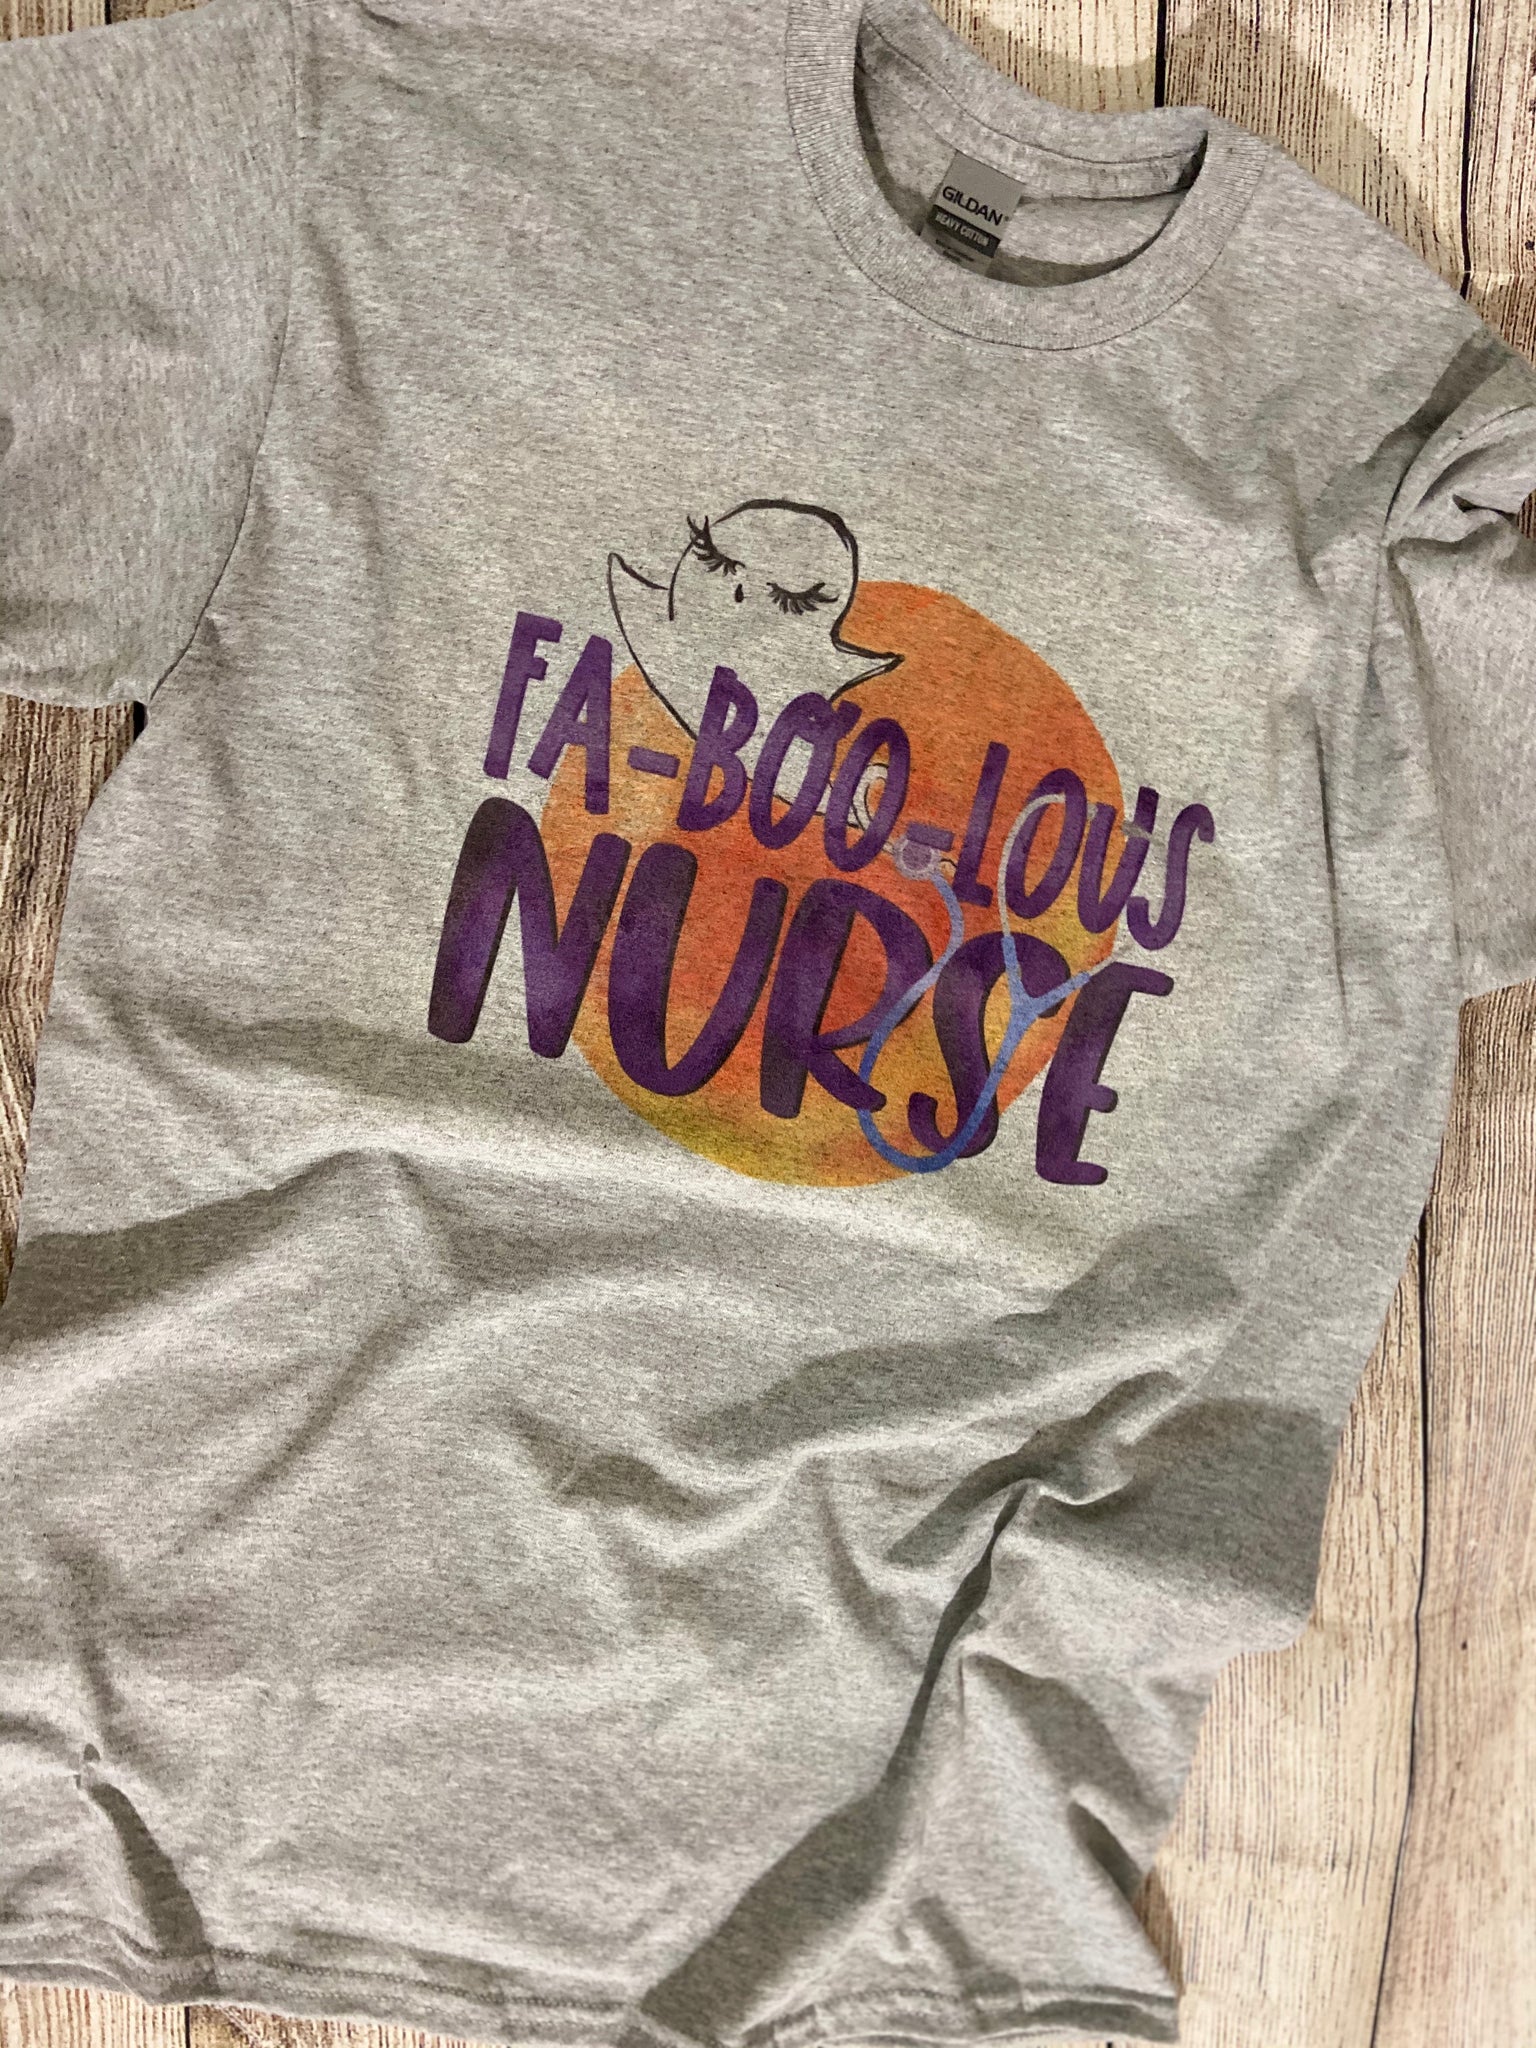 Fa-Boo-Lous Nurse